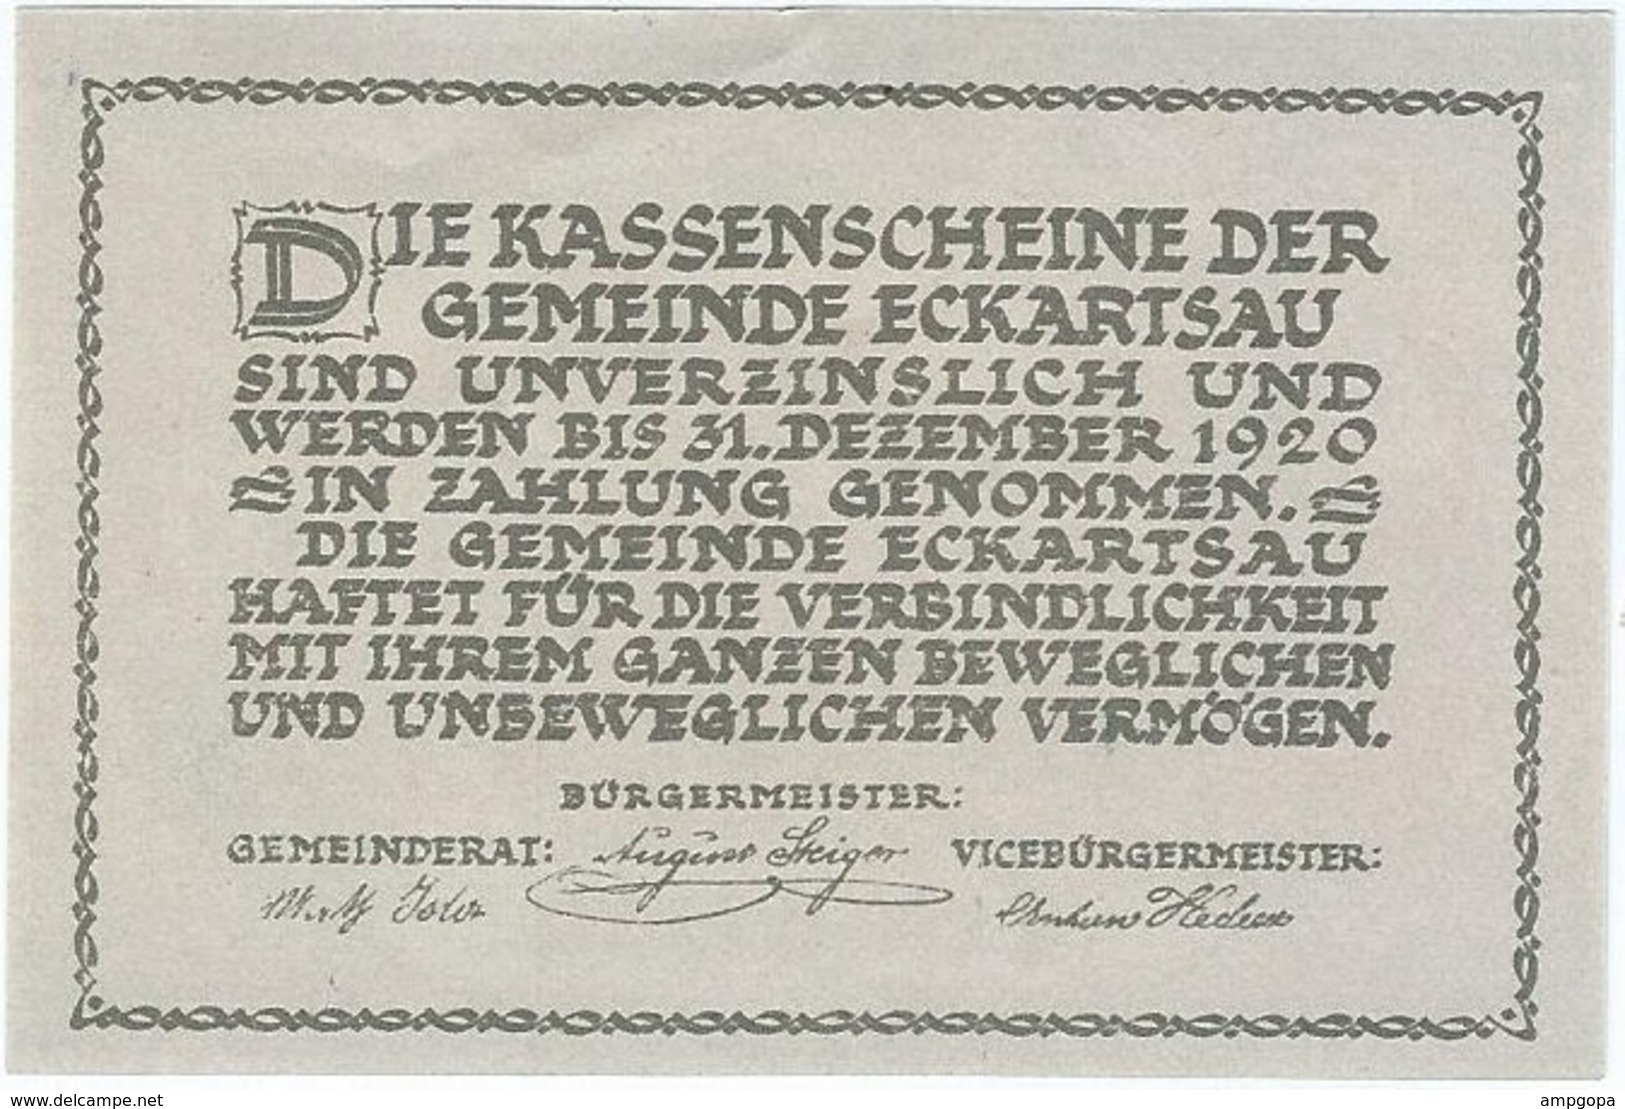 Austria (NOTGELD) 50 Heller 31-12-1920 Eckartsau KON 149 A.3 UNC Ref 3550-1 - Oesterreich